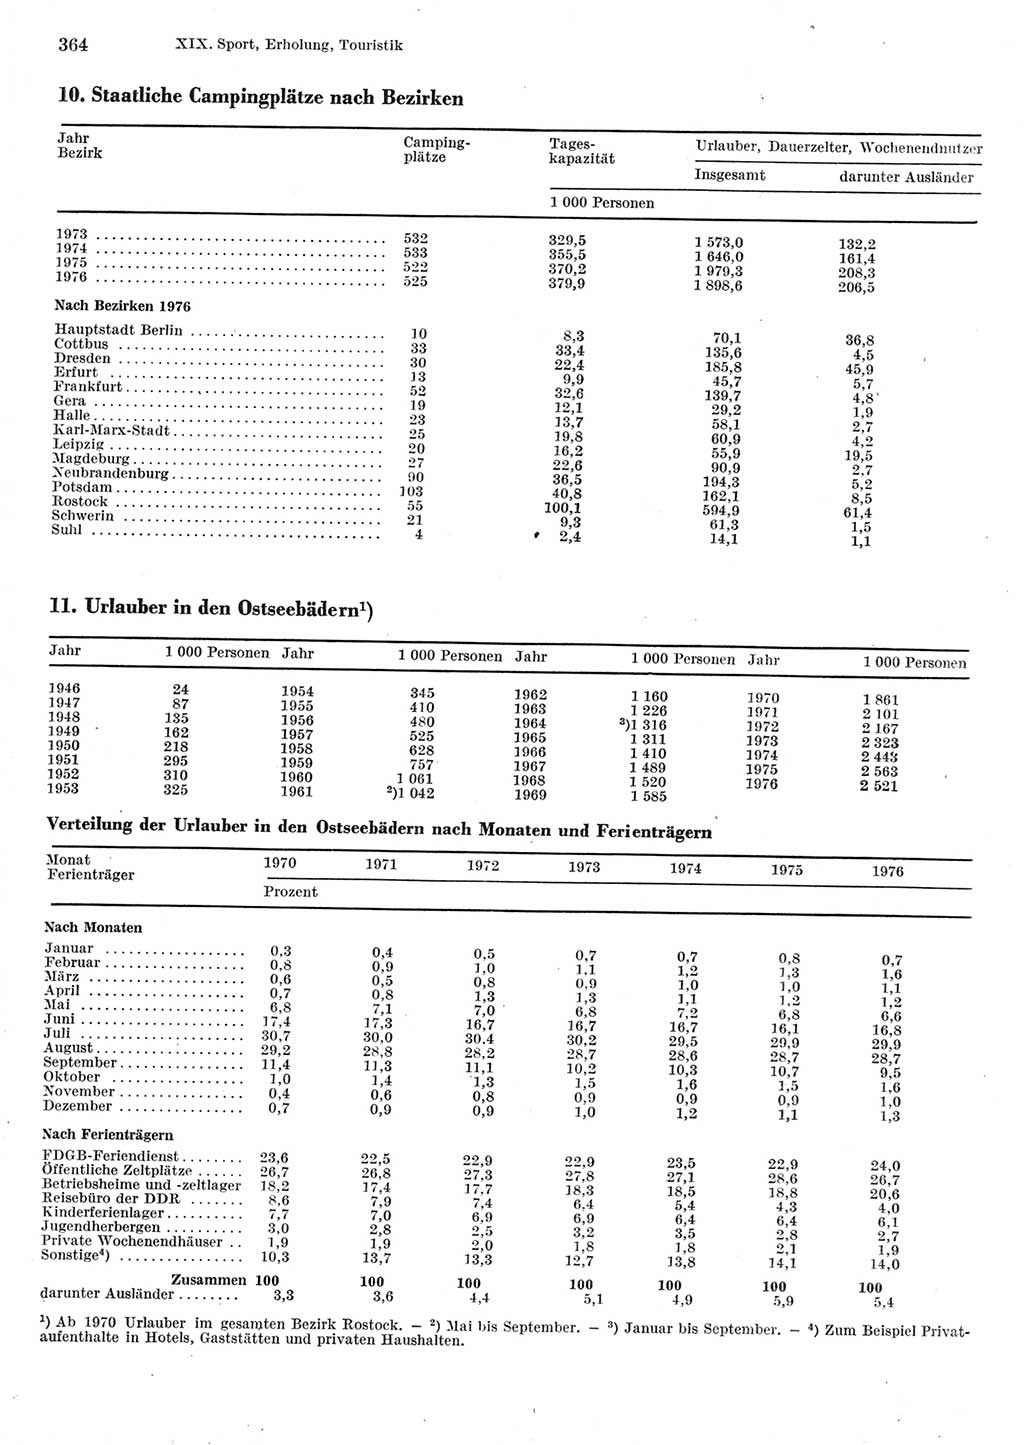 Statistisches Jahrbuch der Deutschen Demokratischen Republik (DDR) 1977, Seite 364 (Stat. Jb. DDR 1977, S. 364)